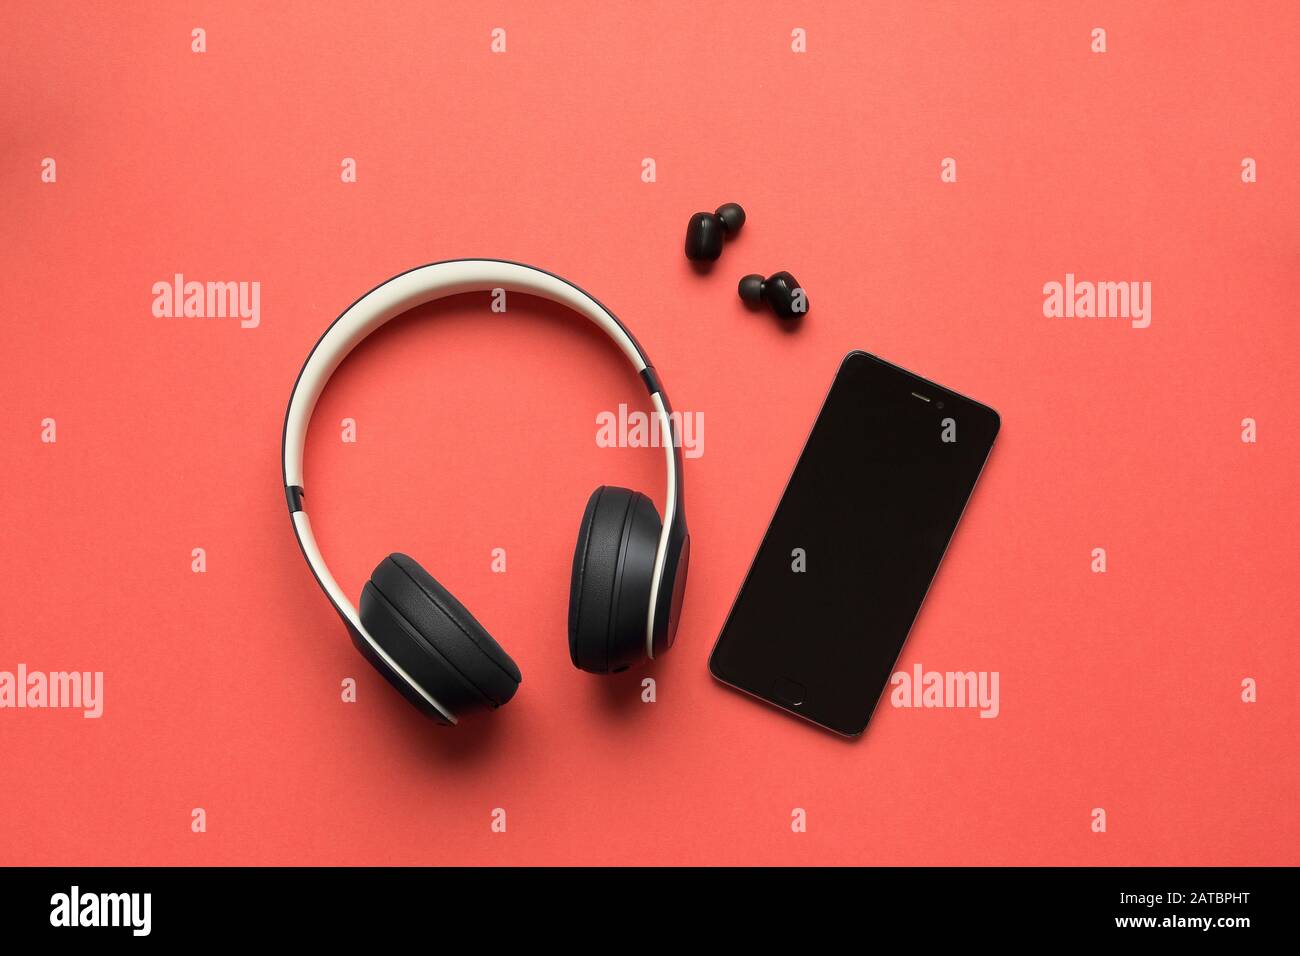 Fotos von großen und kleinen bluetooth-kopfhörern und einem Smartphone zur Wiedergabe von Musik auf rotem Hintergrund Stockfoto